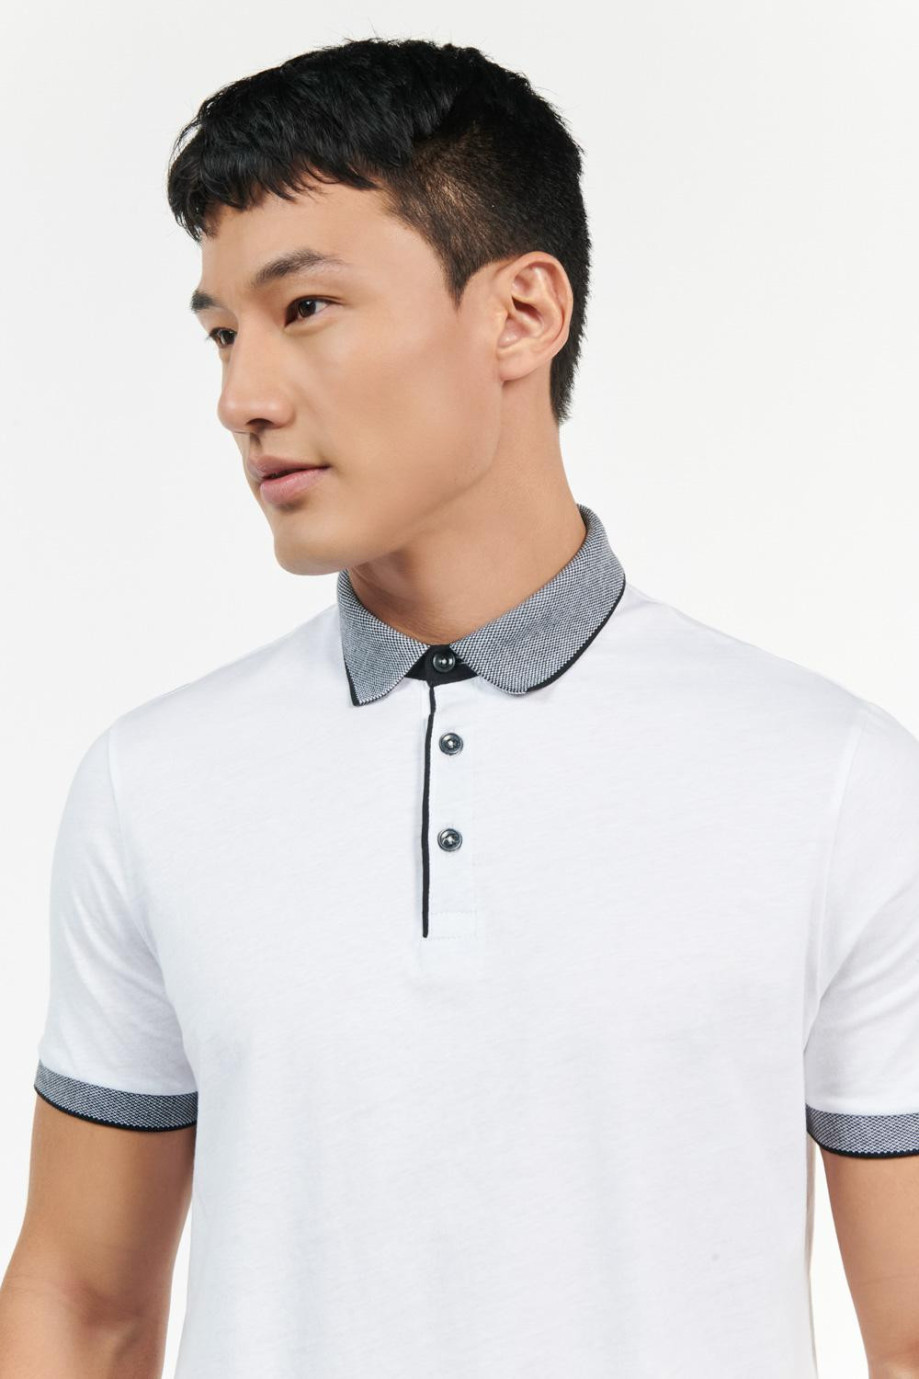 Camiseta polo manga corta unicolor con cuello y puños en contraste